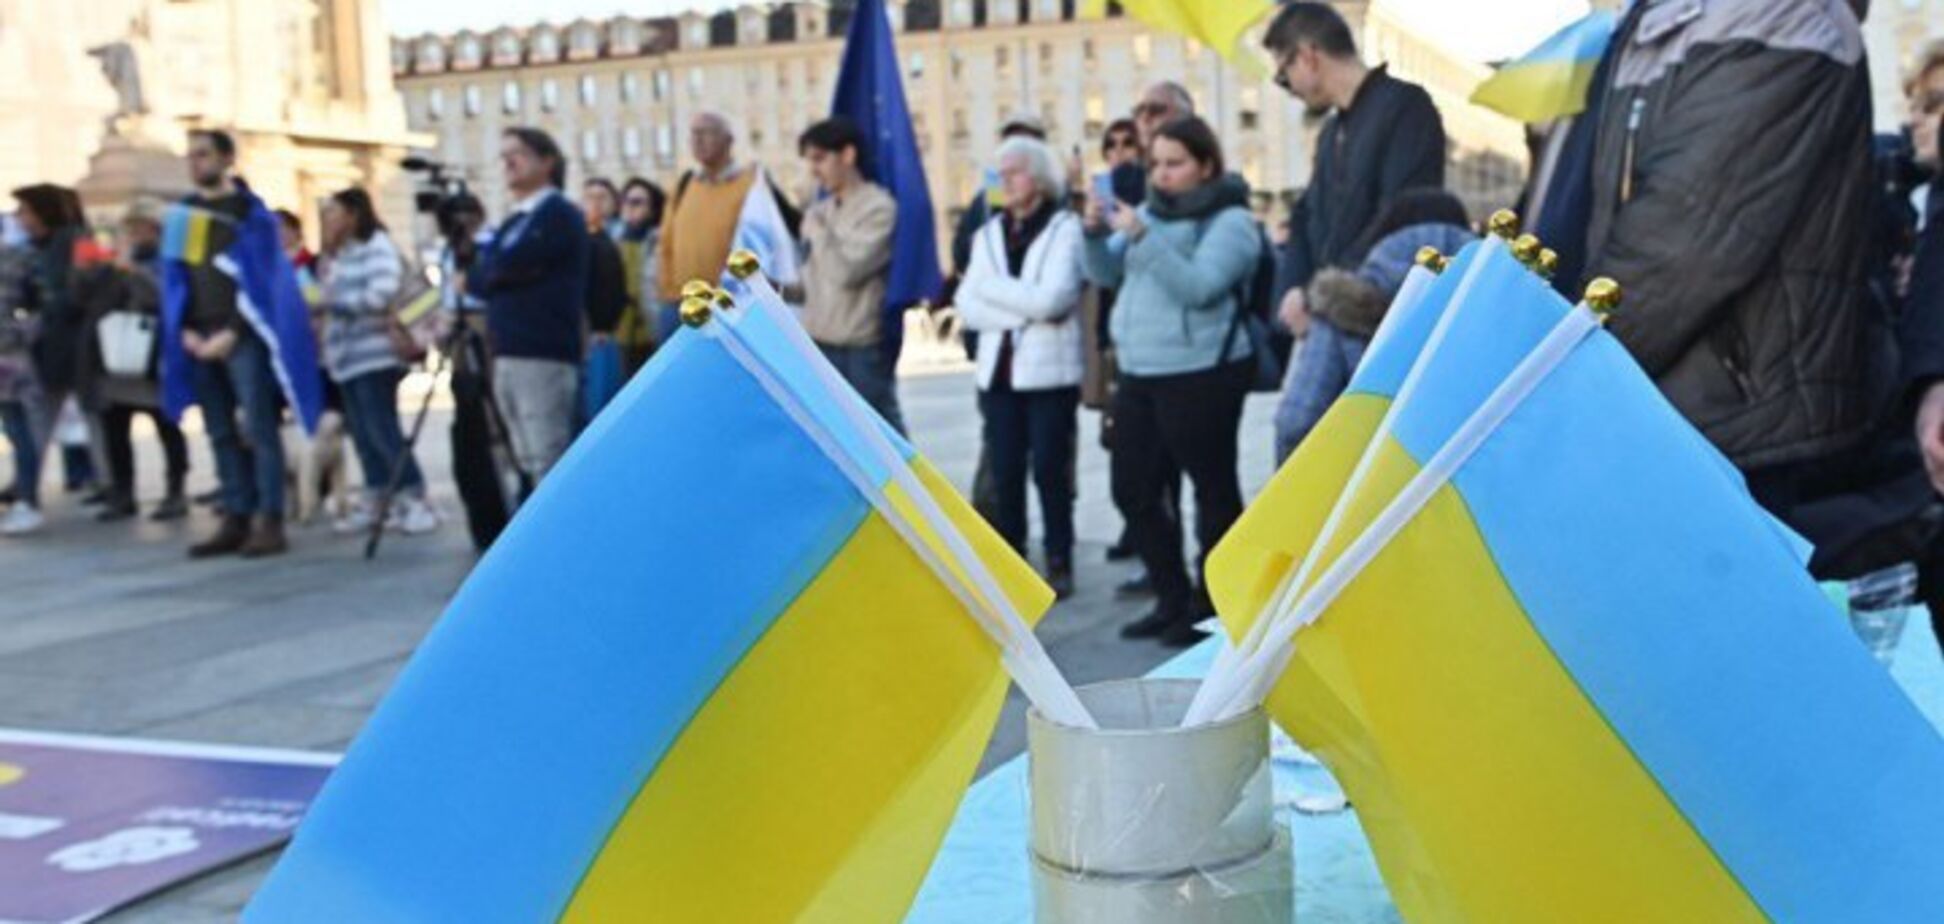 Демократическая система или сильный лидер: опрос показал, что для украинцев является приоритетным